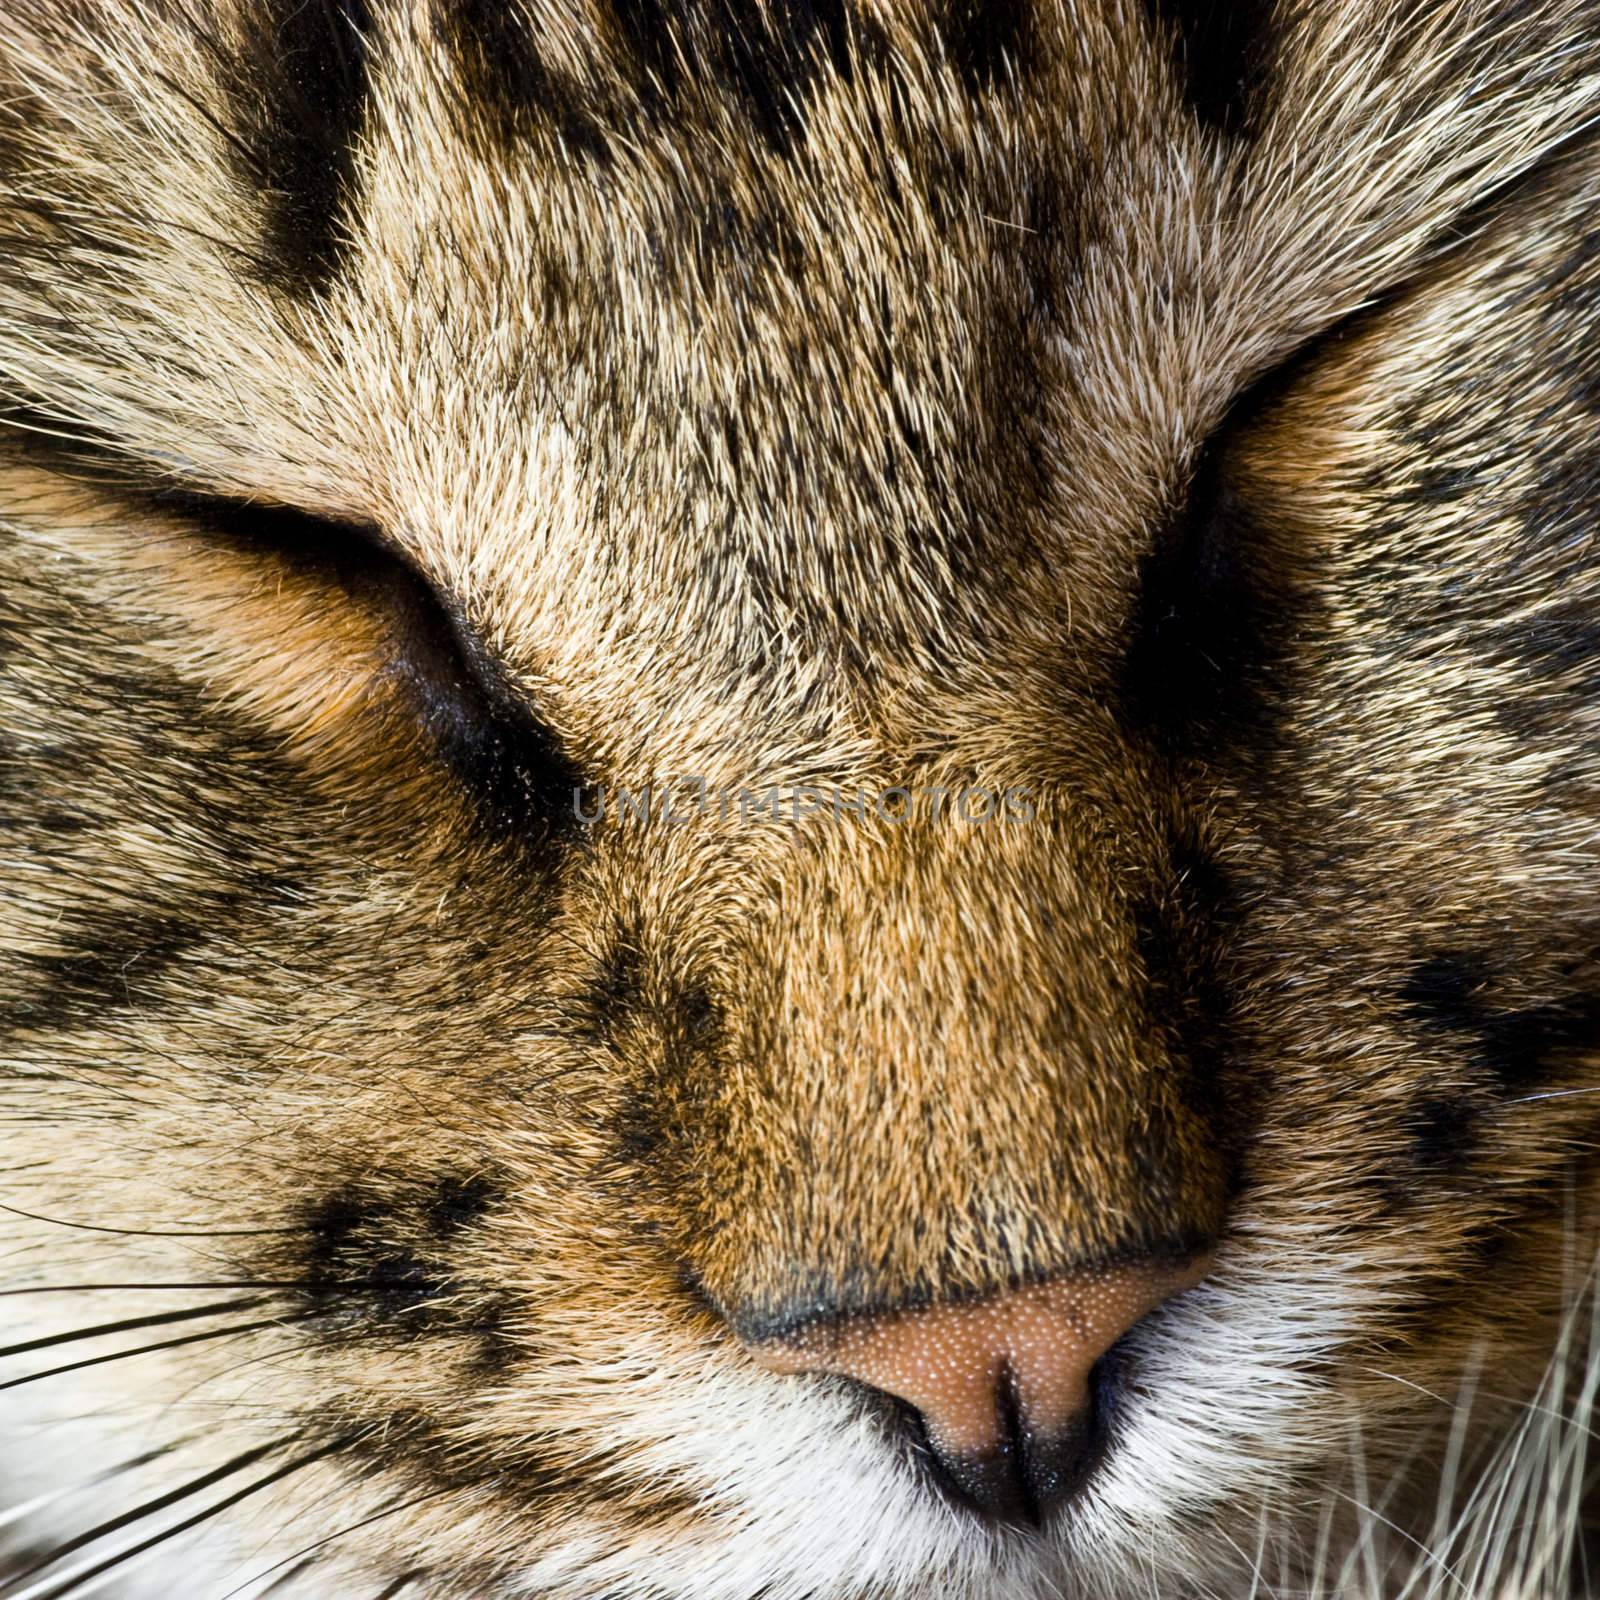 Closeup of sleeping cat face